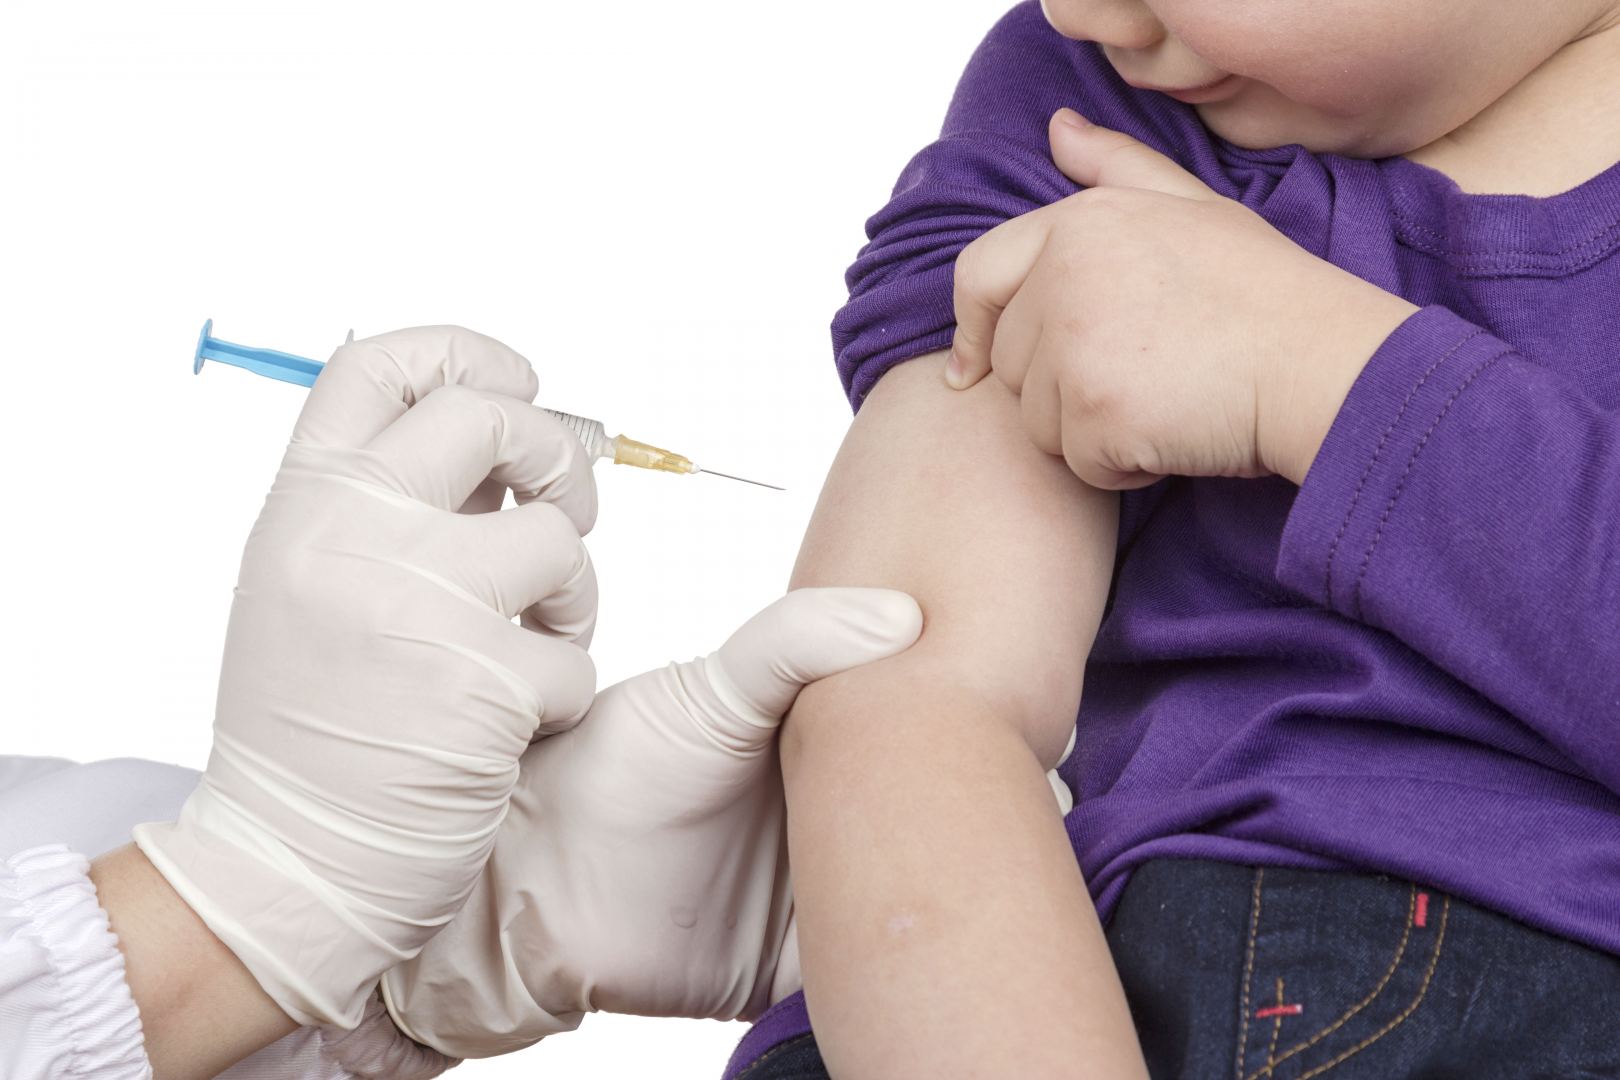 ABŞ-da uşaqların "Pfizer"lə vaksin olunmasına icazə verilə bilər